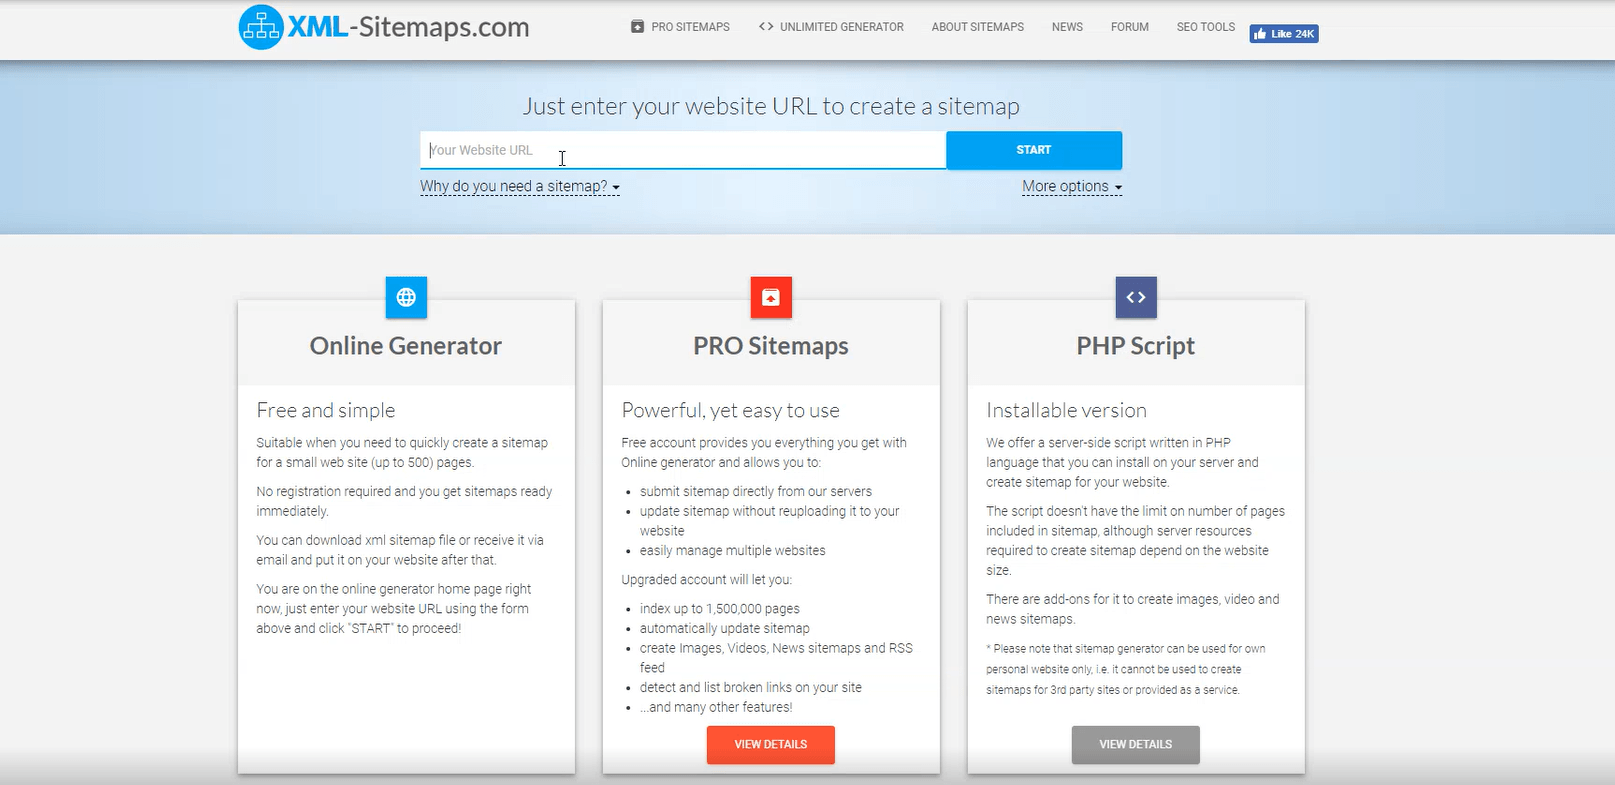 网站XML-Sitemaps提供免费和付费计划选项